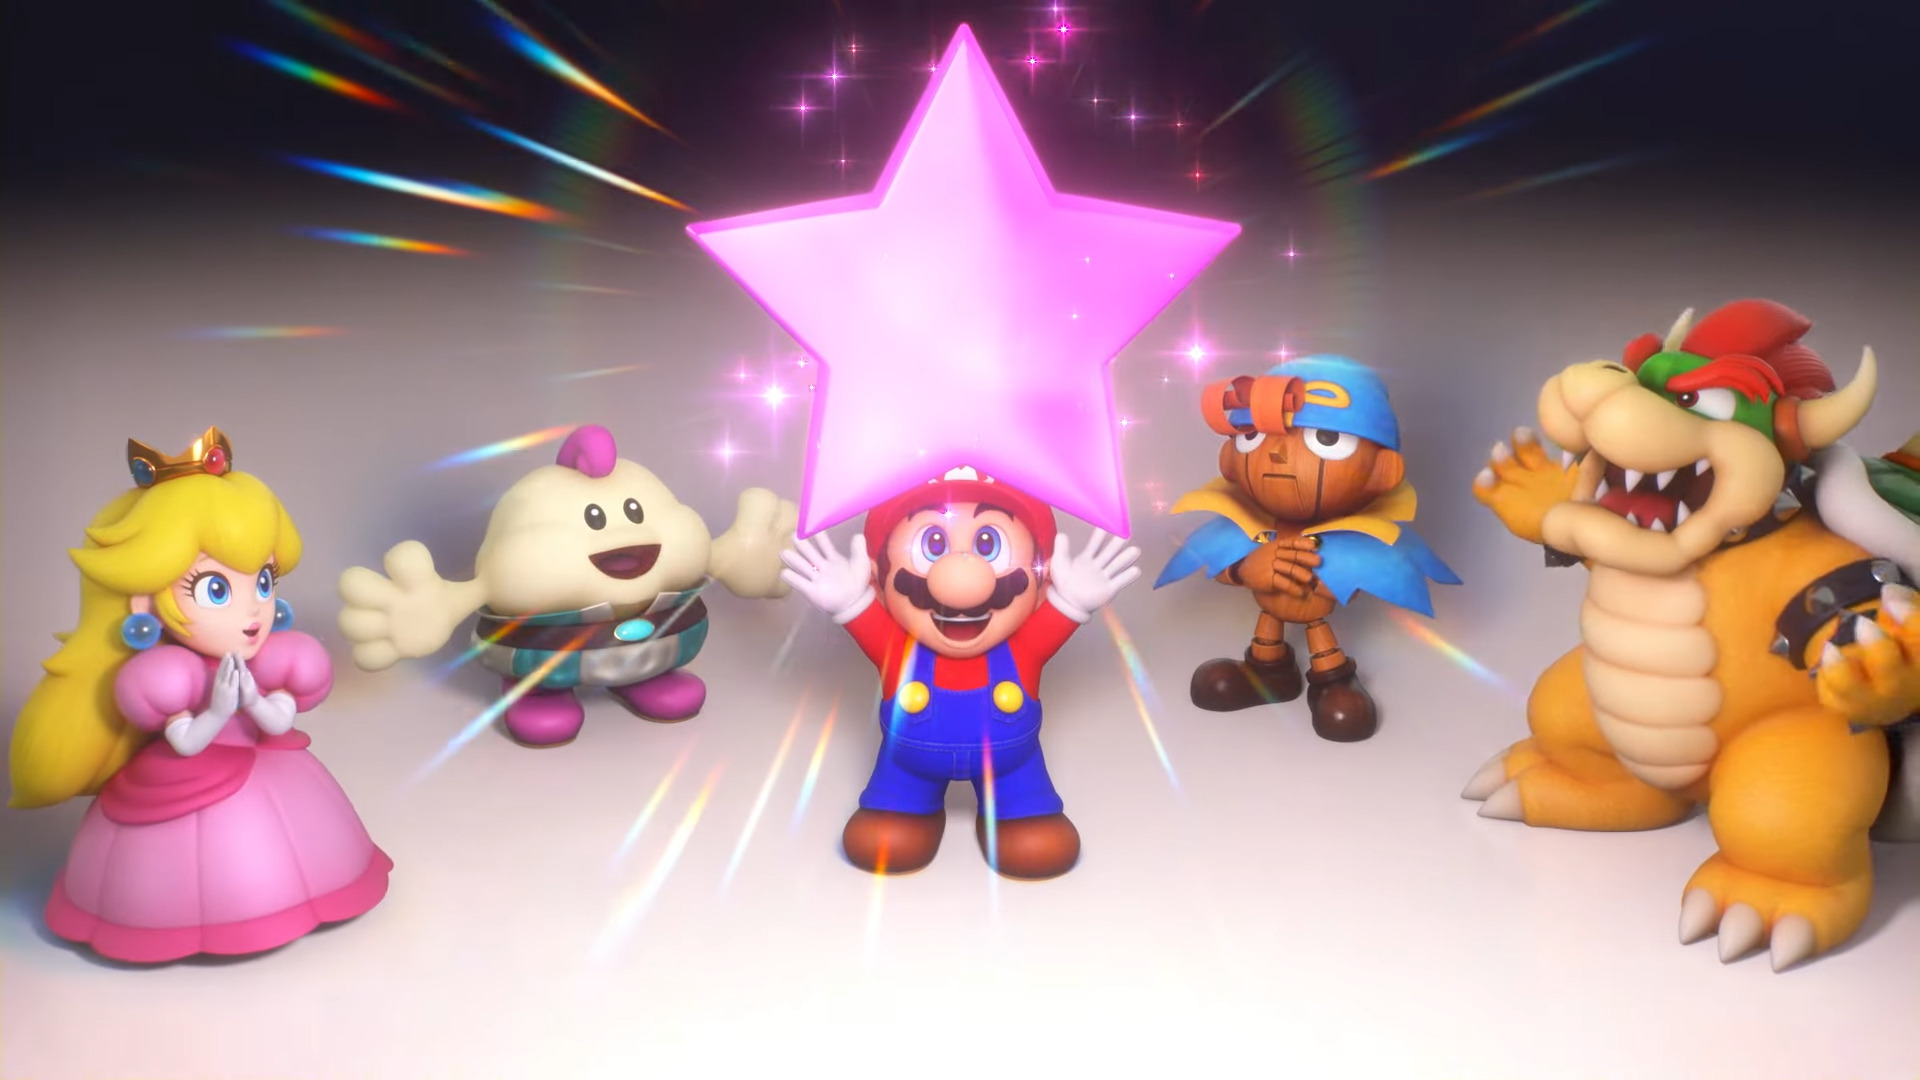 เปิดตัว Super Mario RPG รีเมคลง Nintendo Switch วันที่ 17 พฤศจิกายนนี้